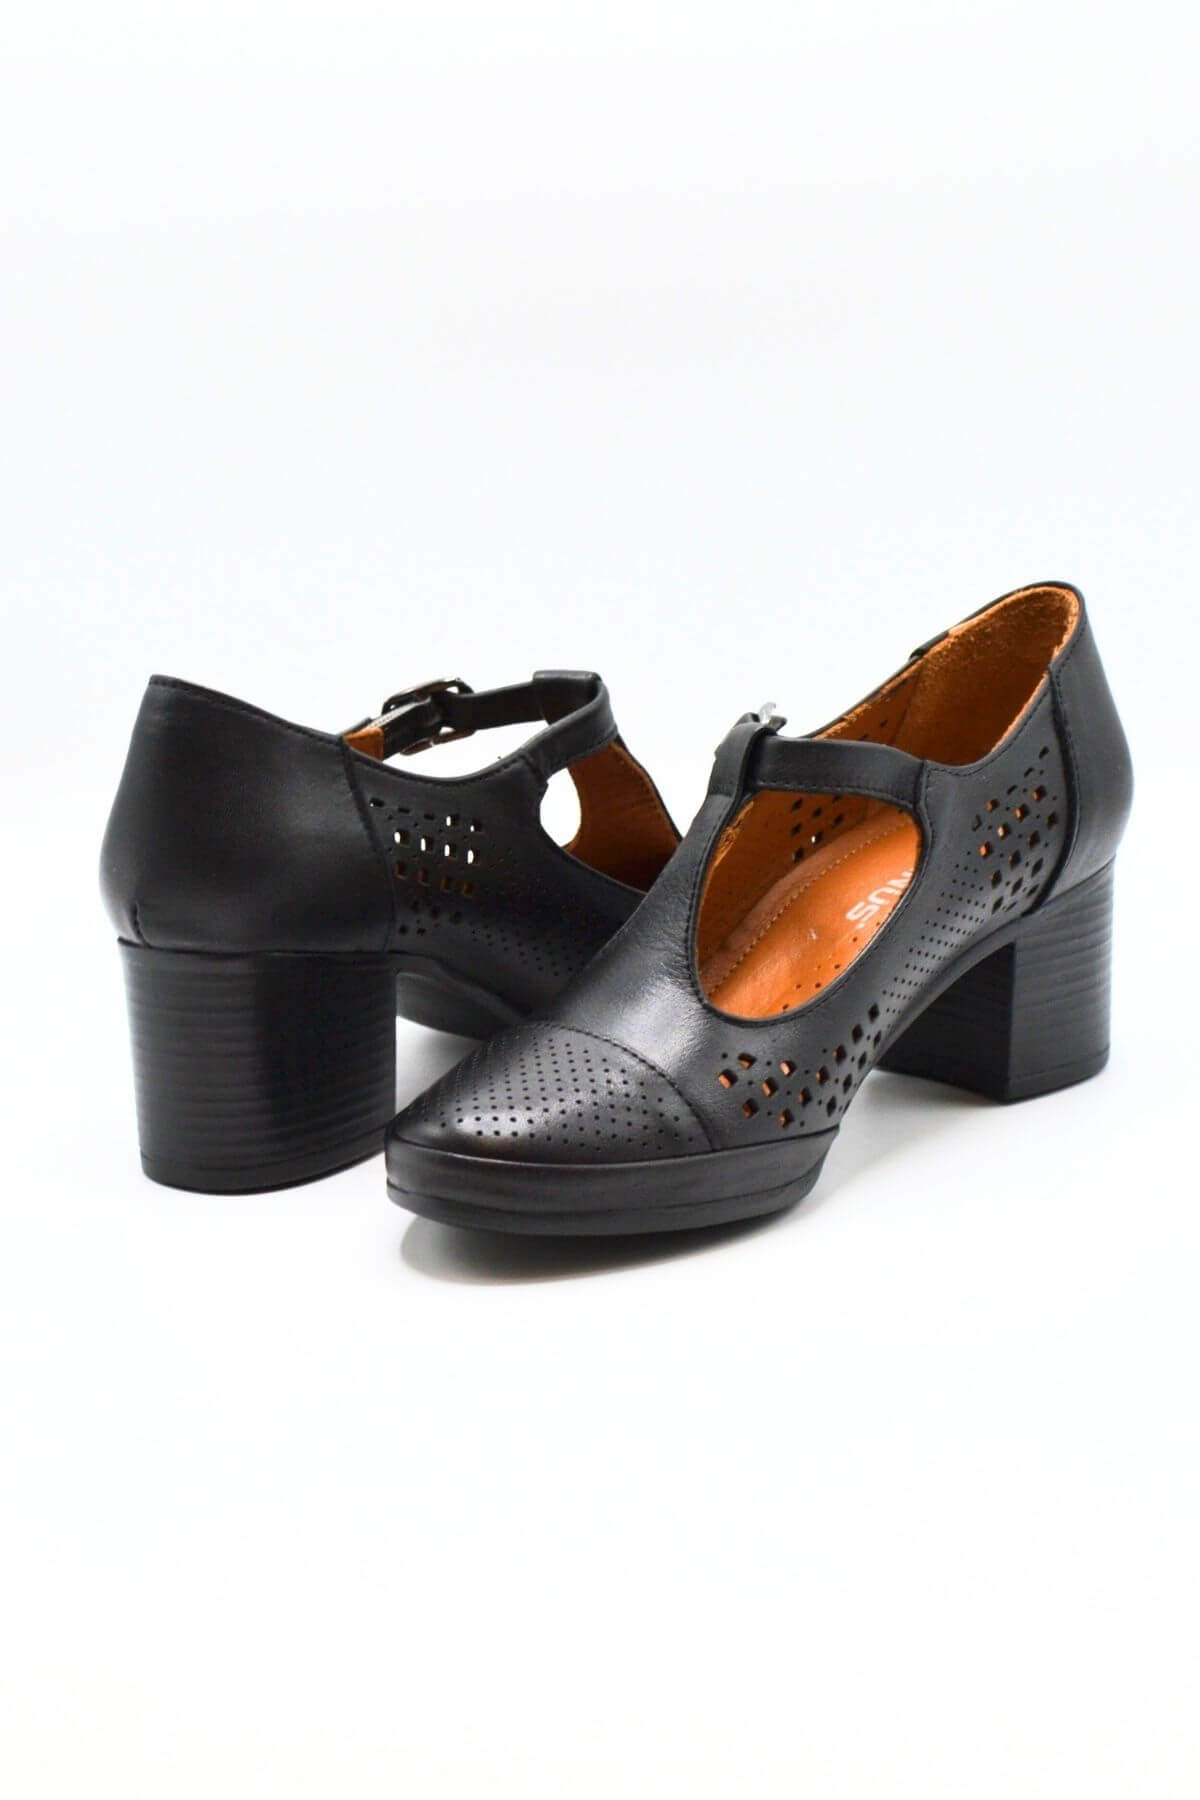 Kadın Yazlık Topuklu Deri Ayakkabı Siyah 1911923Y